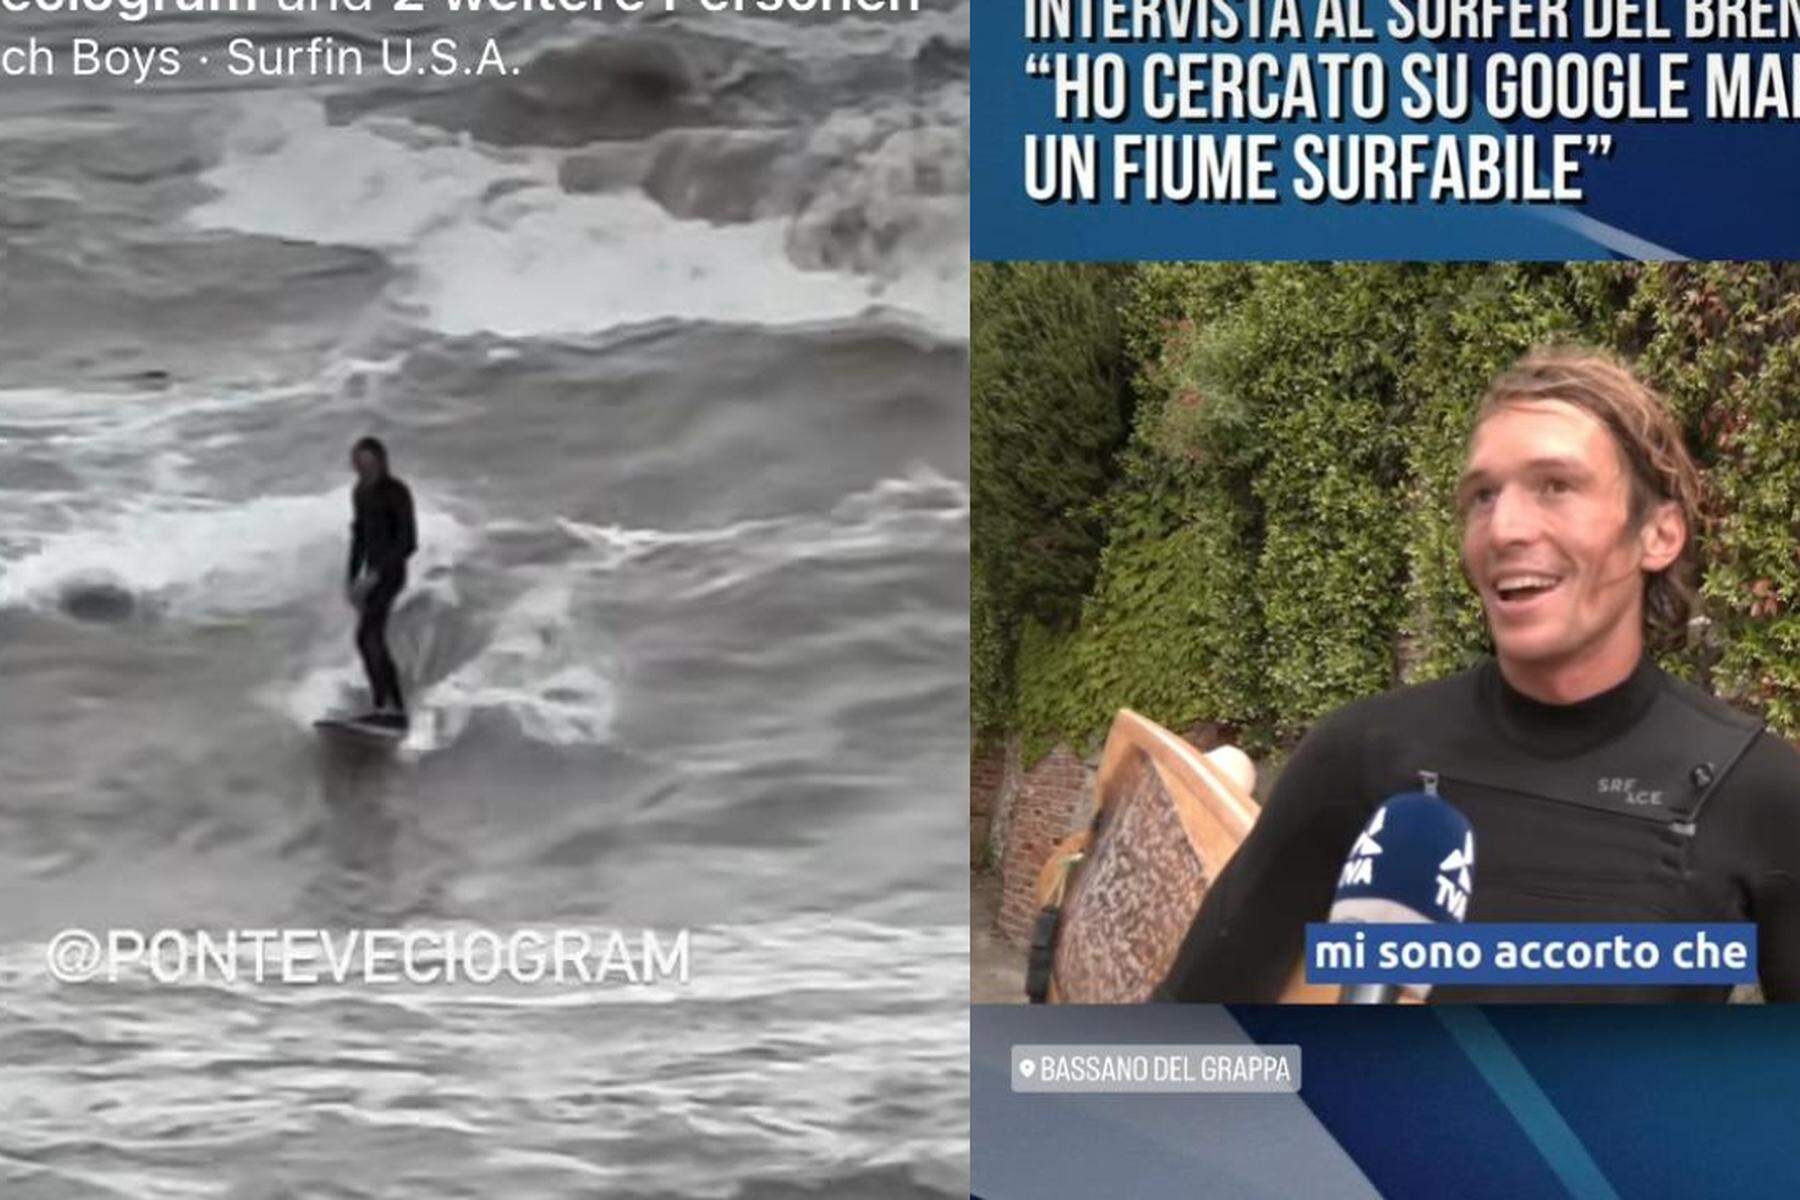 Nach Unwetter auf Fluss gesurft  : Applaus, Views und Kritik an Grazer Surfer in Italien